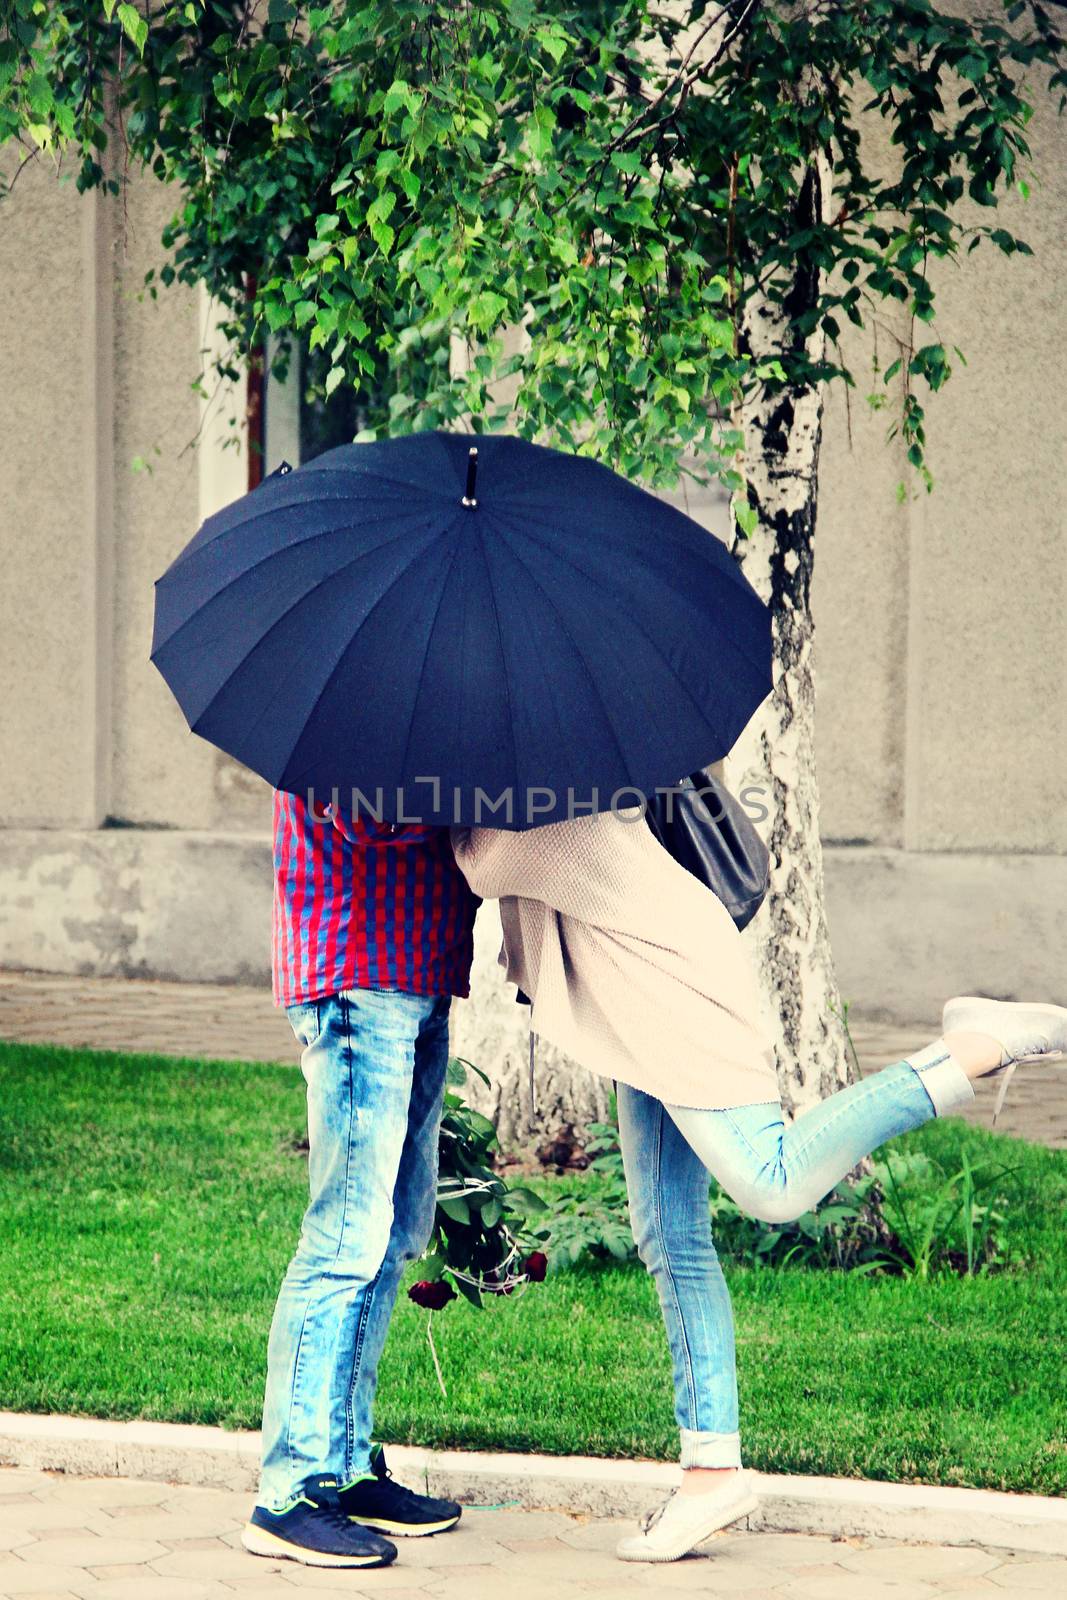 lovers unde an umbrella on a date. photo by Irinavk